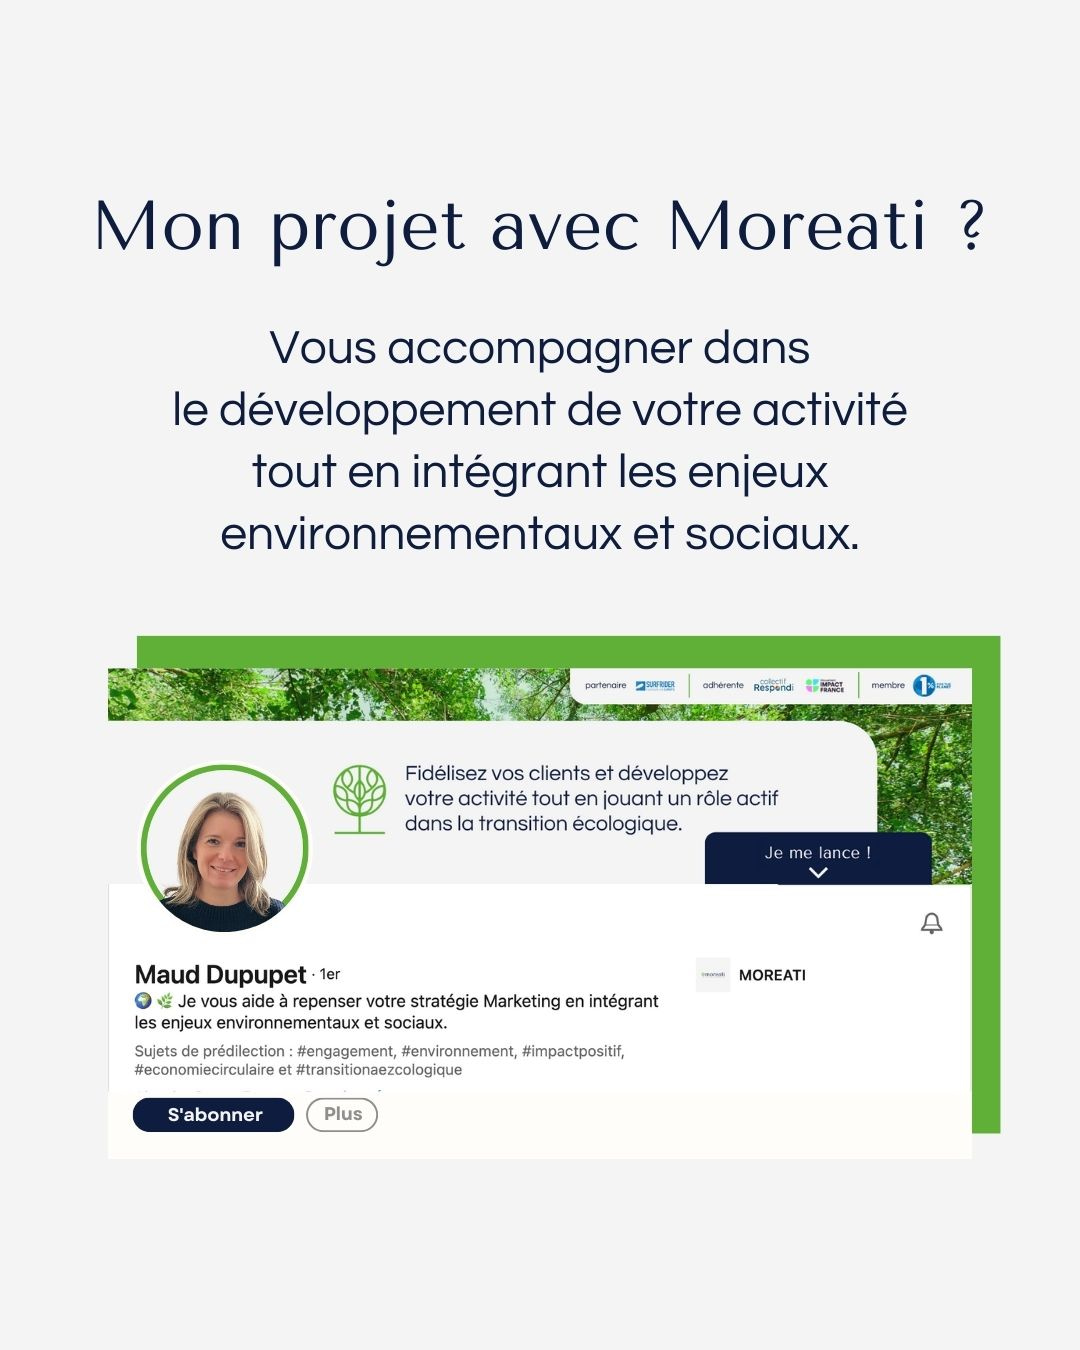 page de présentation du profil Linkedin de Maud, fondatrice de Moreati.